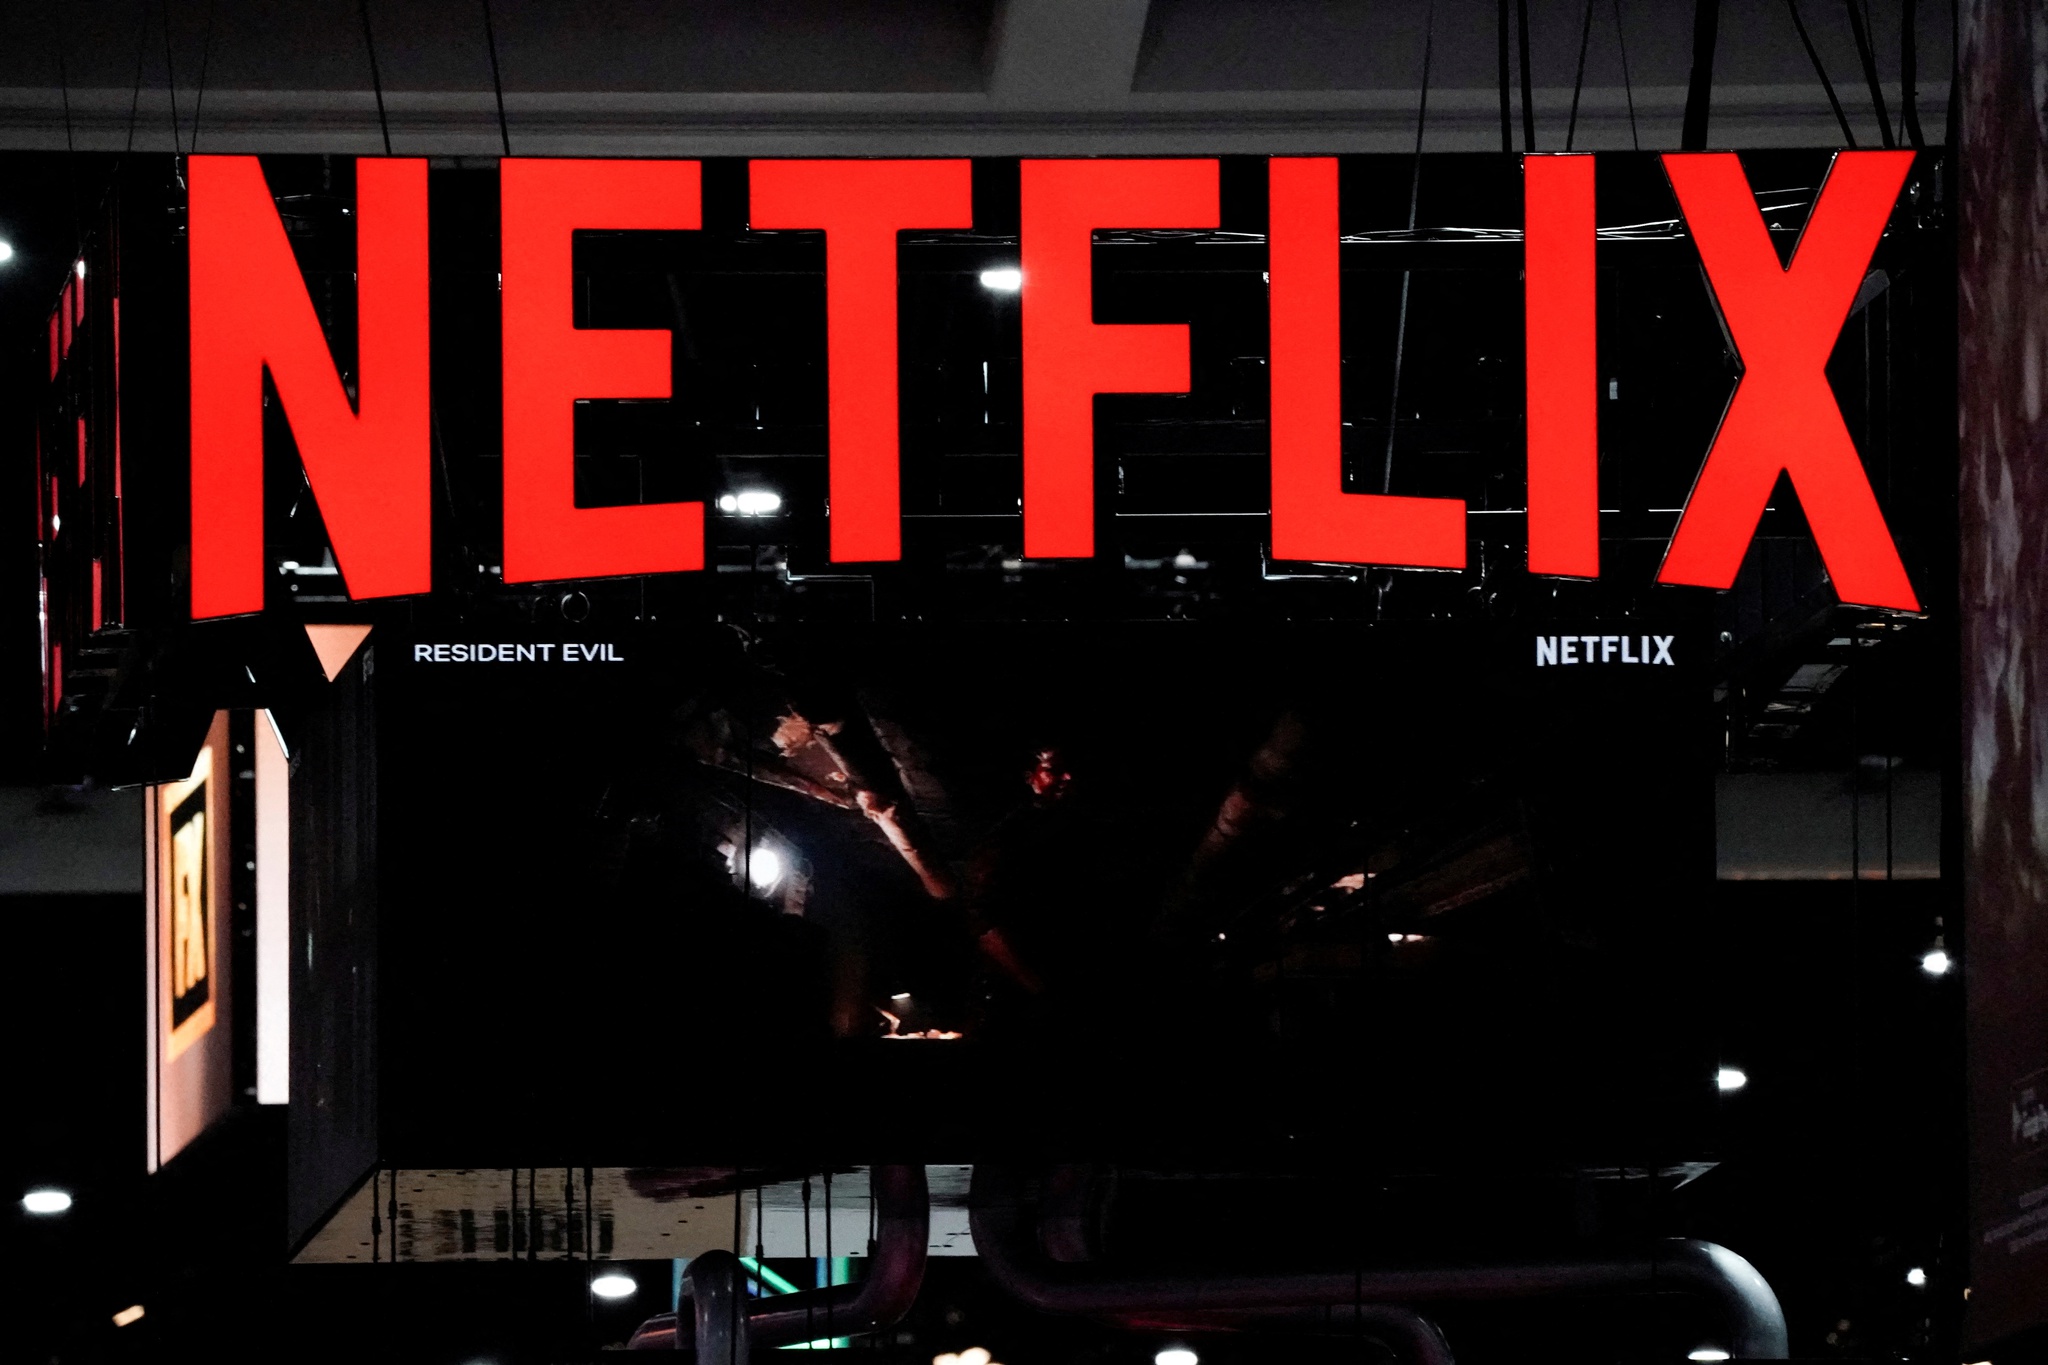 Netflix grátis a caminho? Serviço lança plano gratuito no Quênia com  algumas limitações 